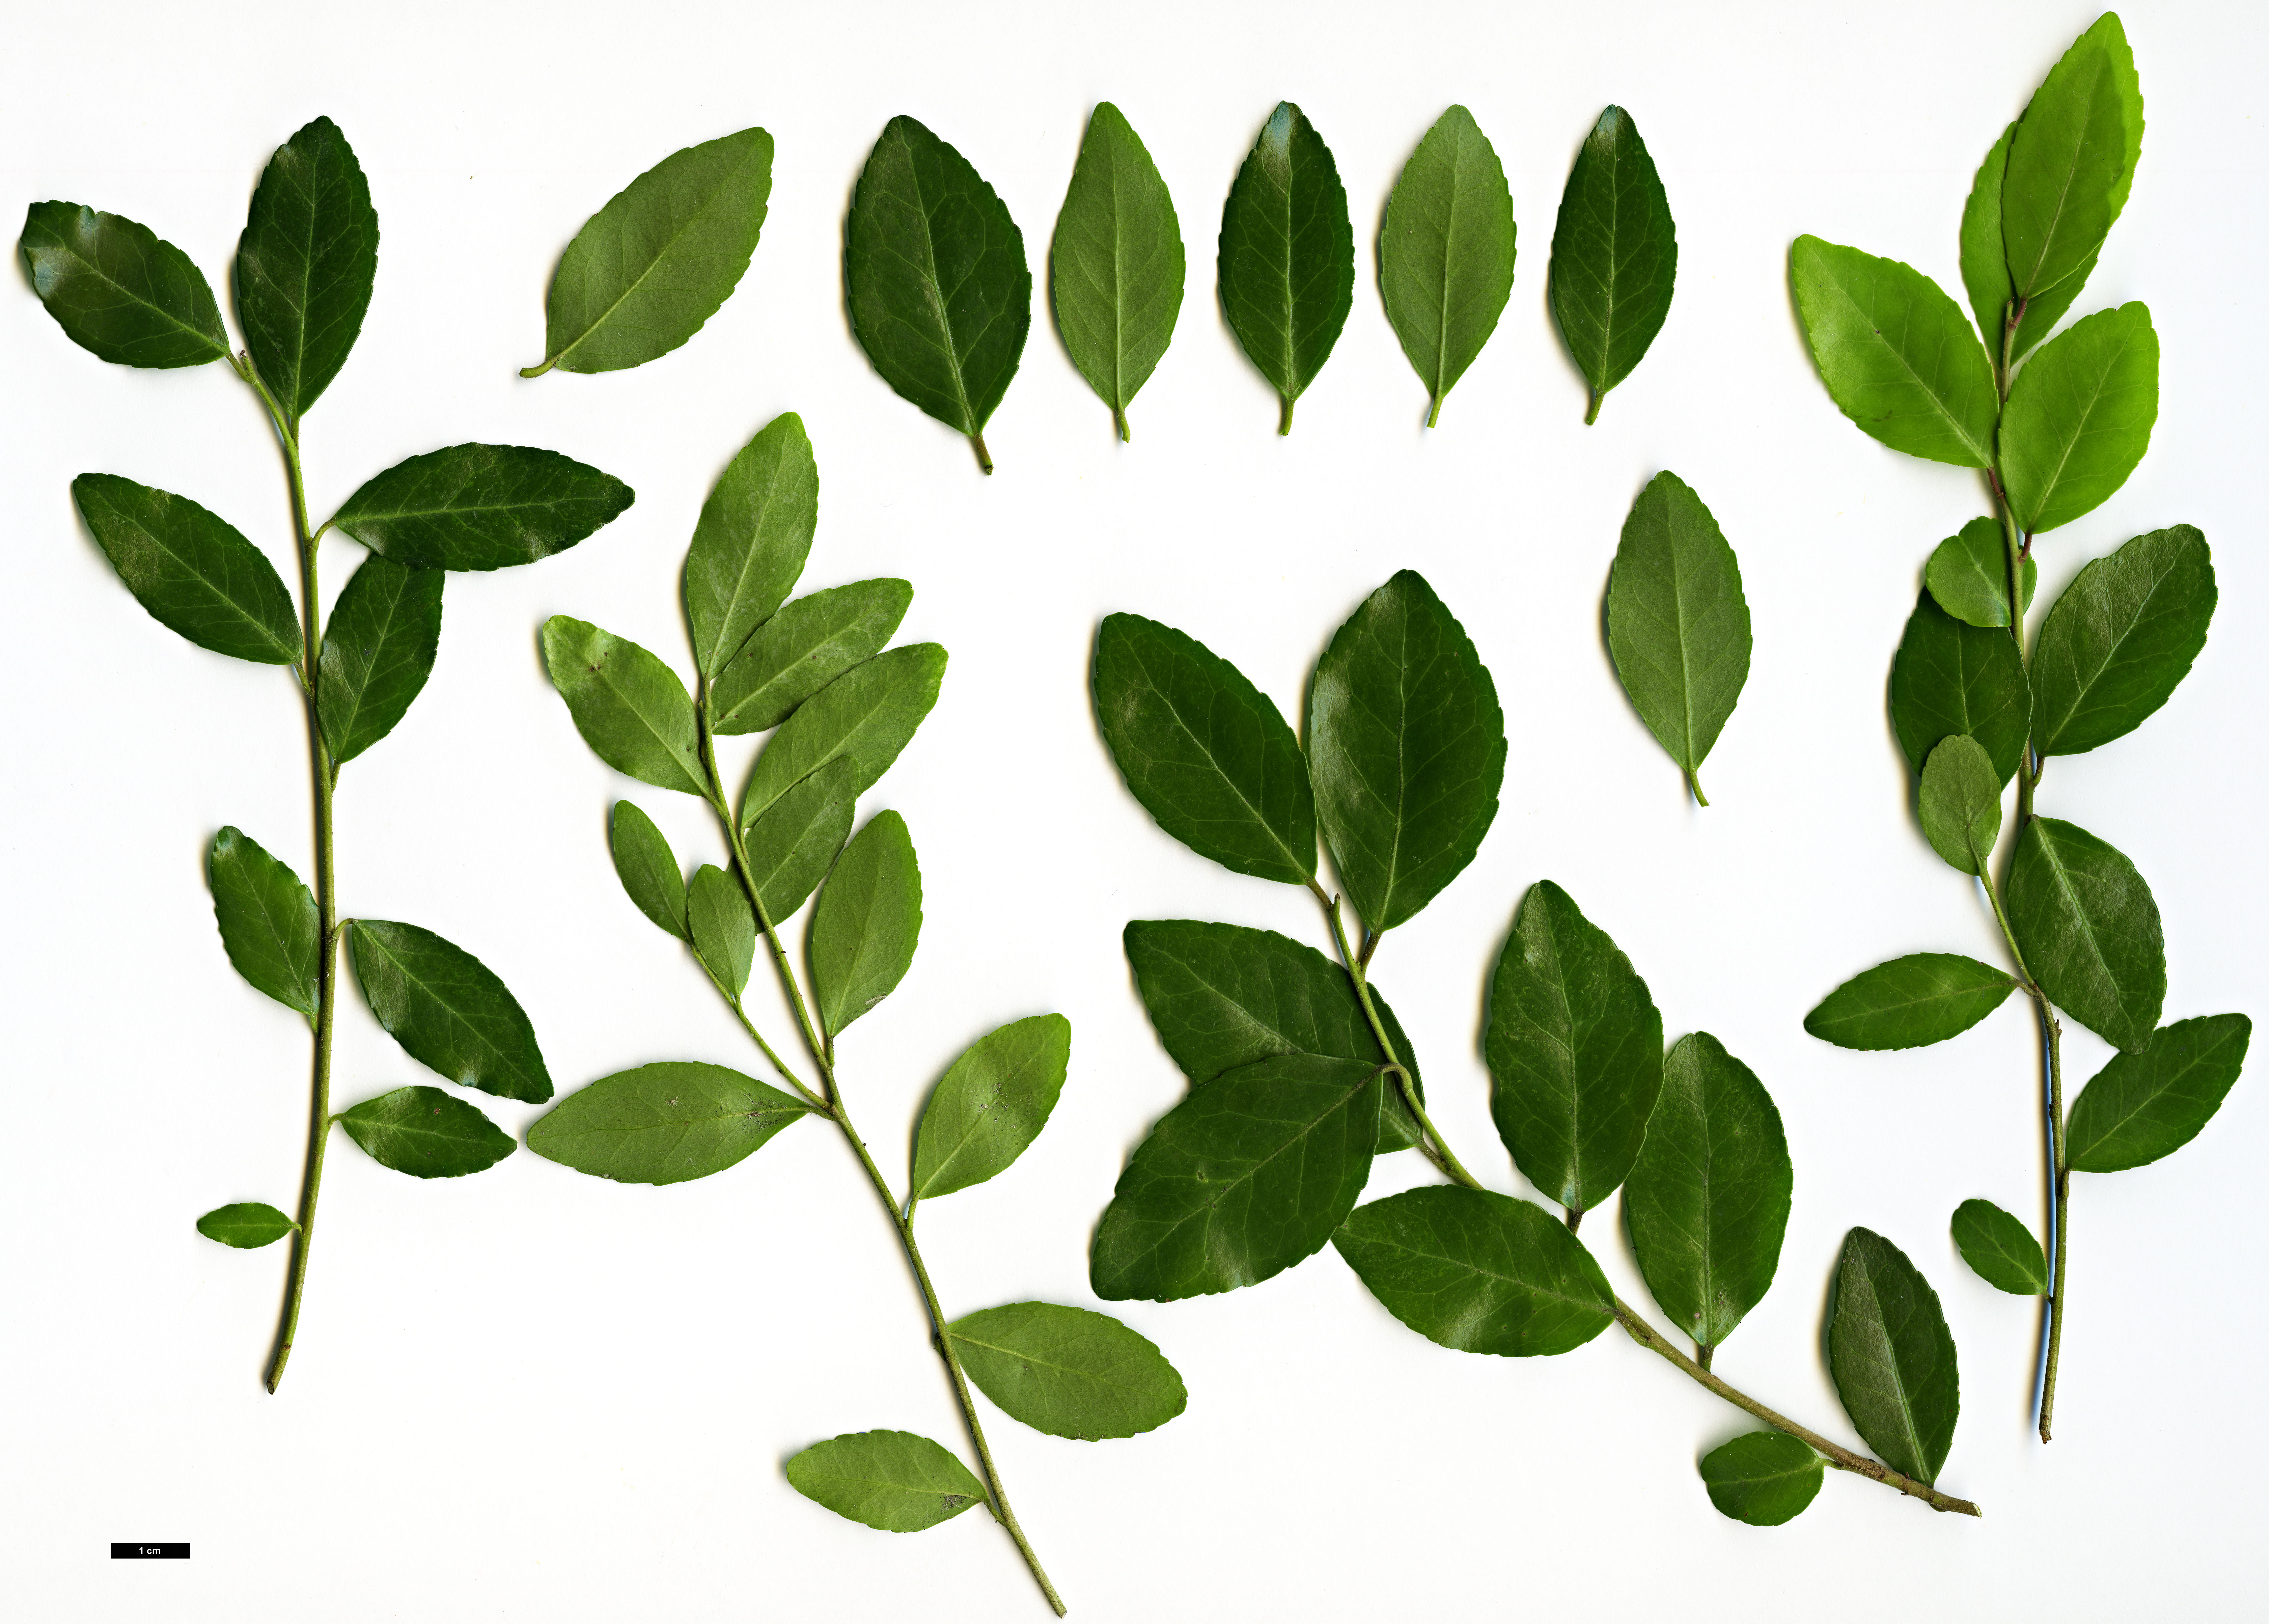 High resolution image: Family: Aquifoliaceae - Genus: Ilex - Taxon: vomitoria